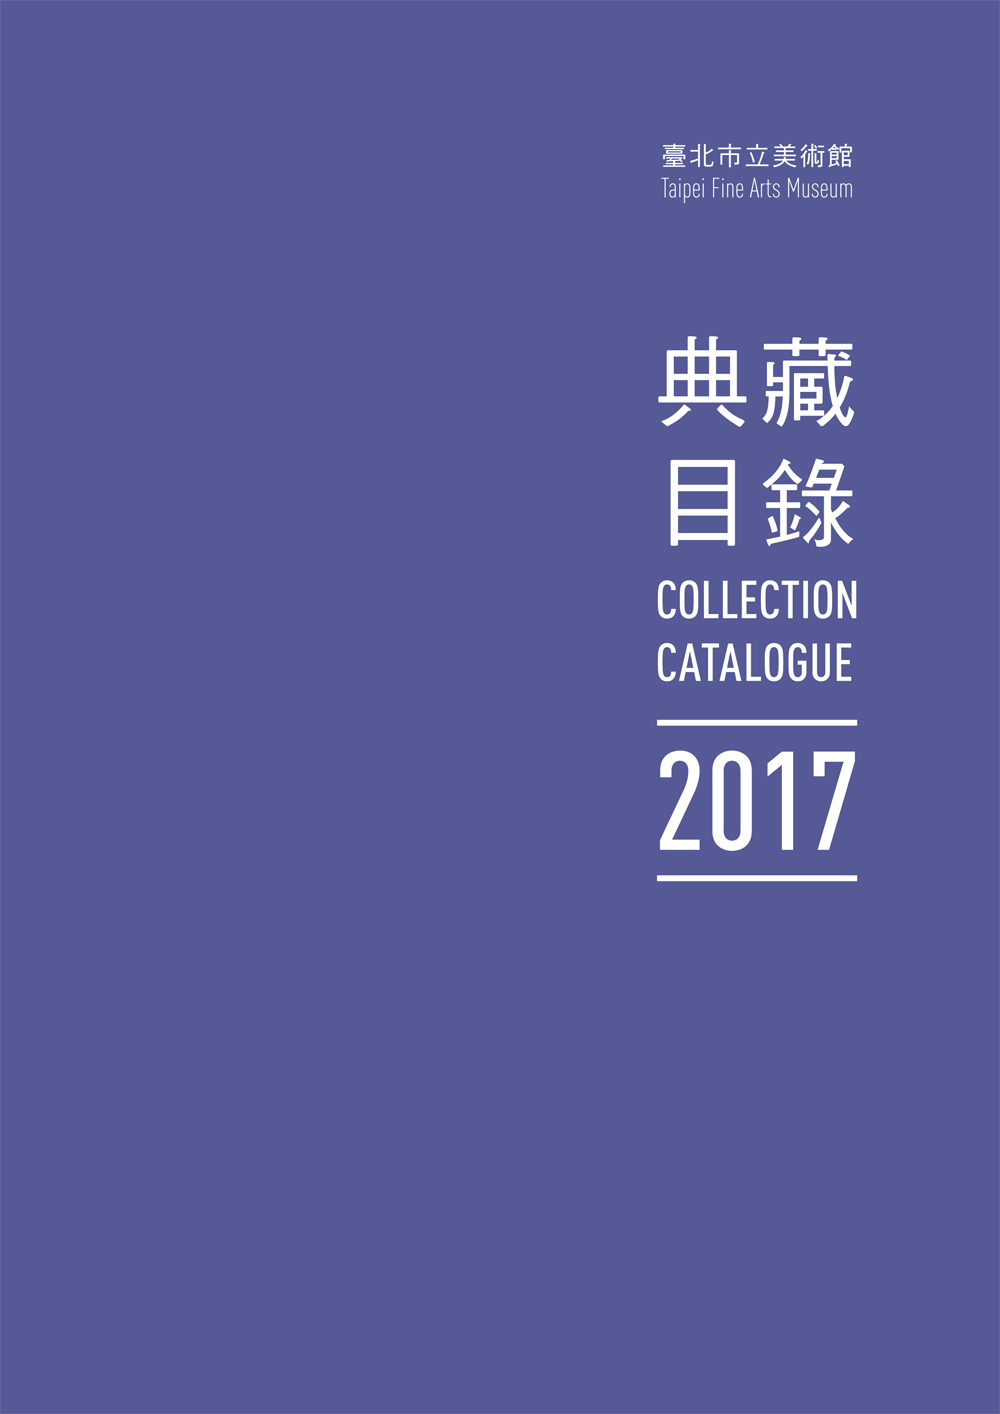 臺北市立美術館典藏目錄106(2017) 的圖說